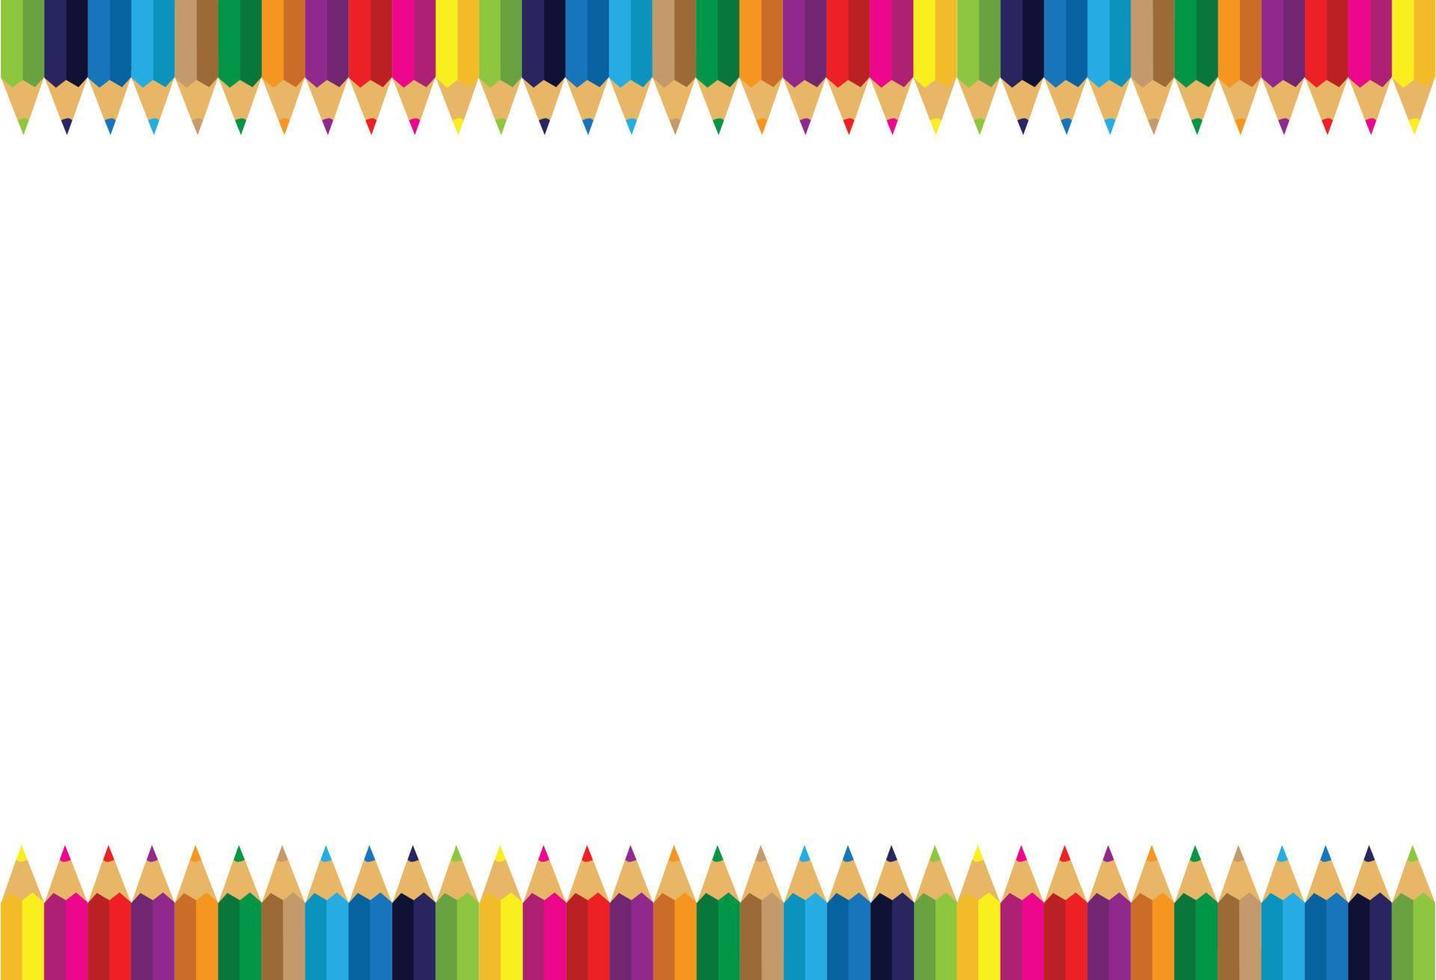 bordure de cadre de crayons colorés sur fond blanc, crayons colorés, illustration vectorielle. vecteur